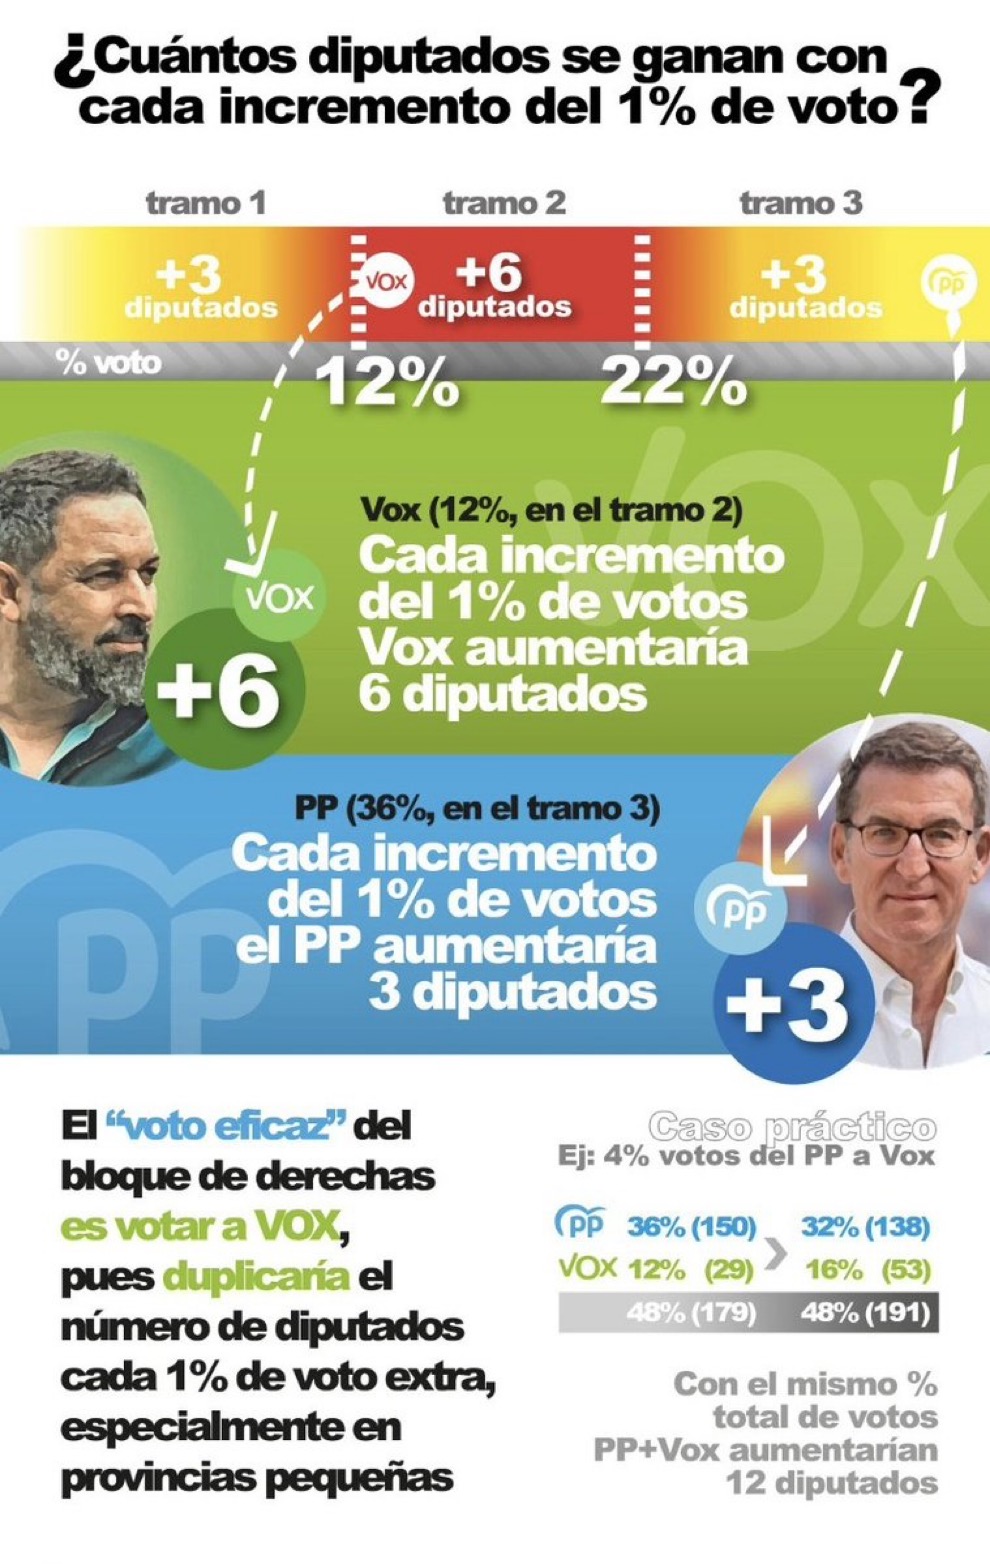 Jornada electoral en España hoy. - Página 3 Img_5610